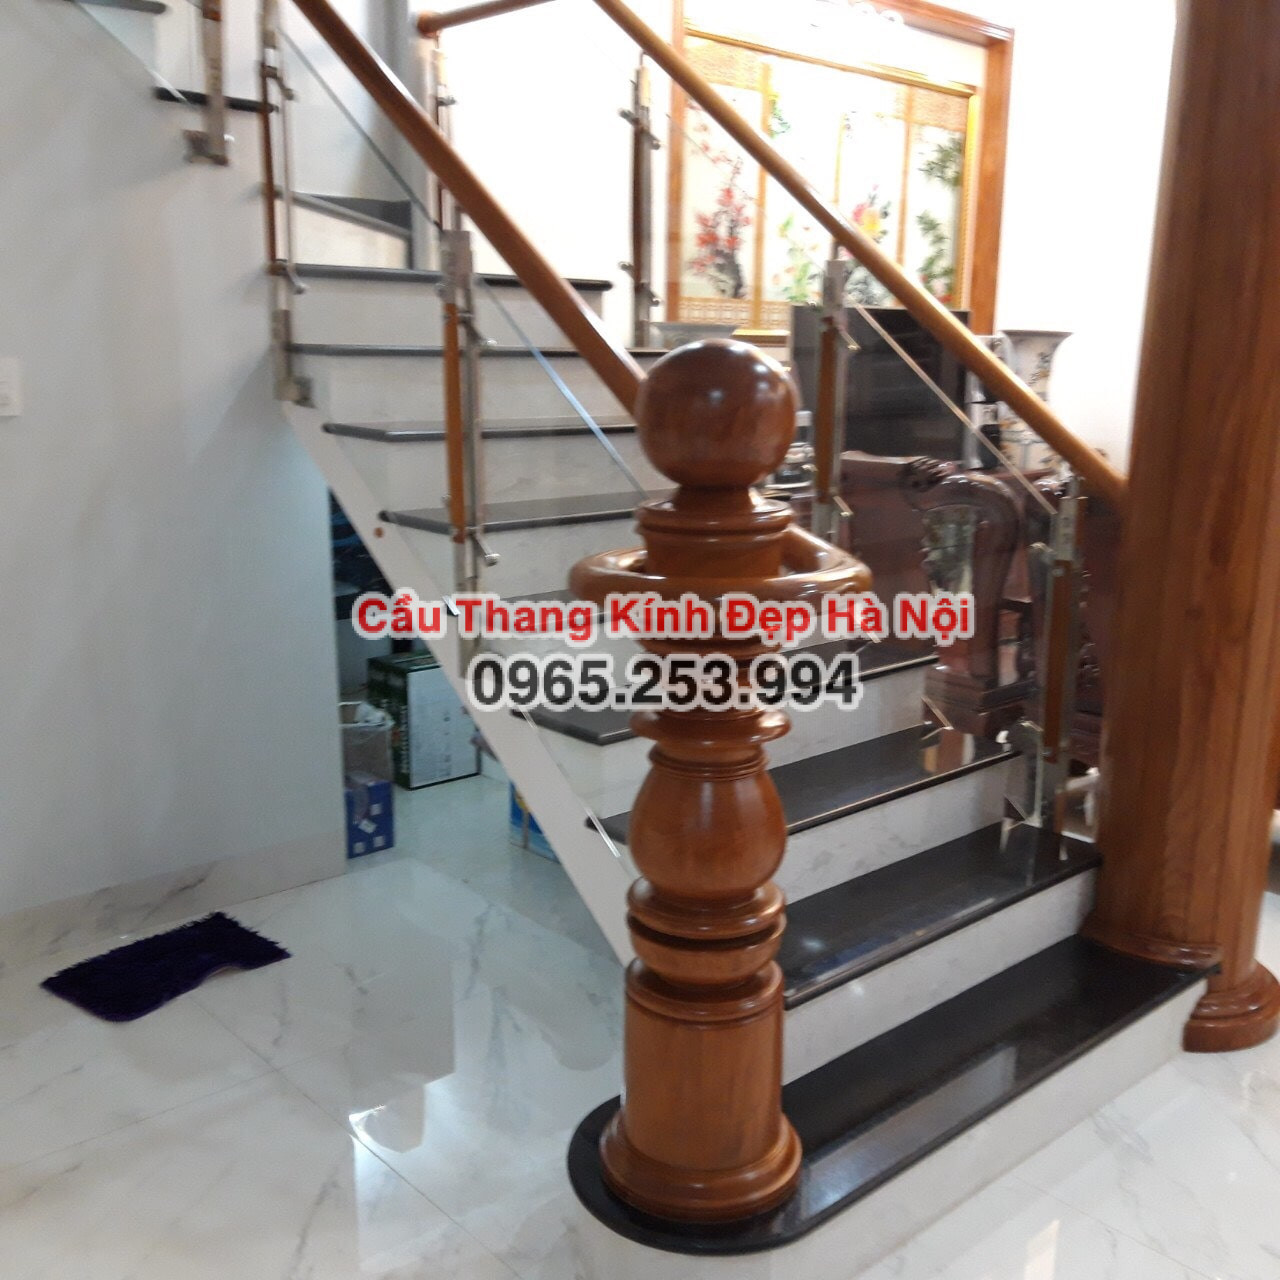 Cầu thang đẹp Hà Nội Tư vấn chọn Cầu thang kính chân gỗ các loại tại Quận Nam Từ Liêm thiết kế theo yêu cầu uy tín gọi ngay 0965.253.994